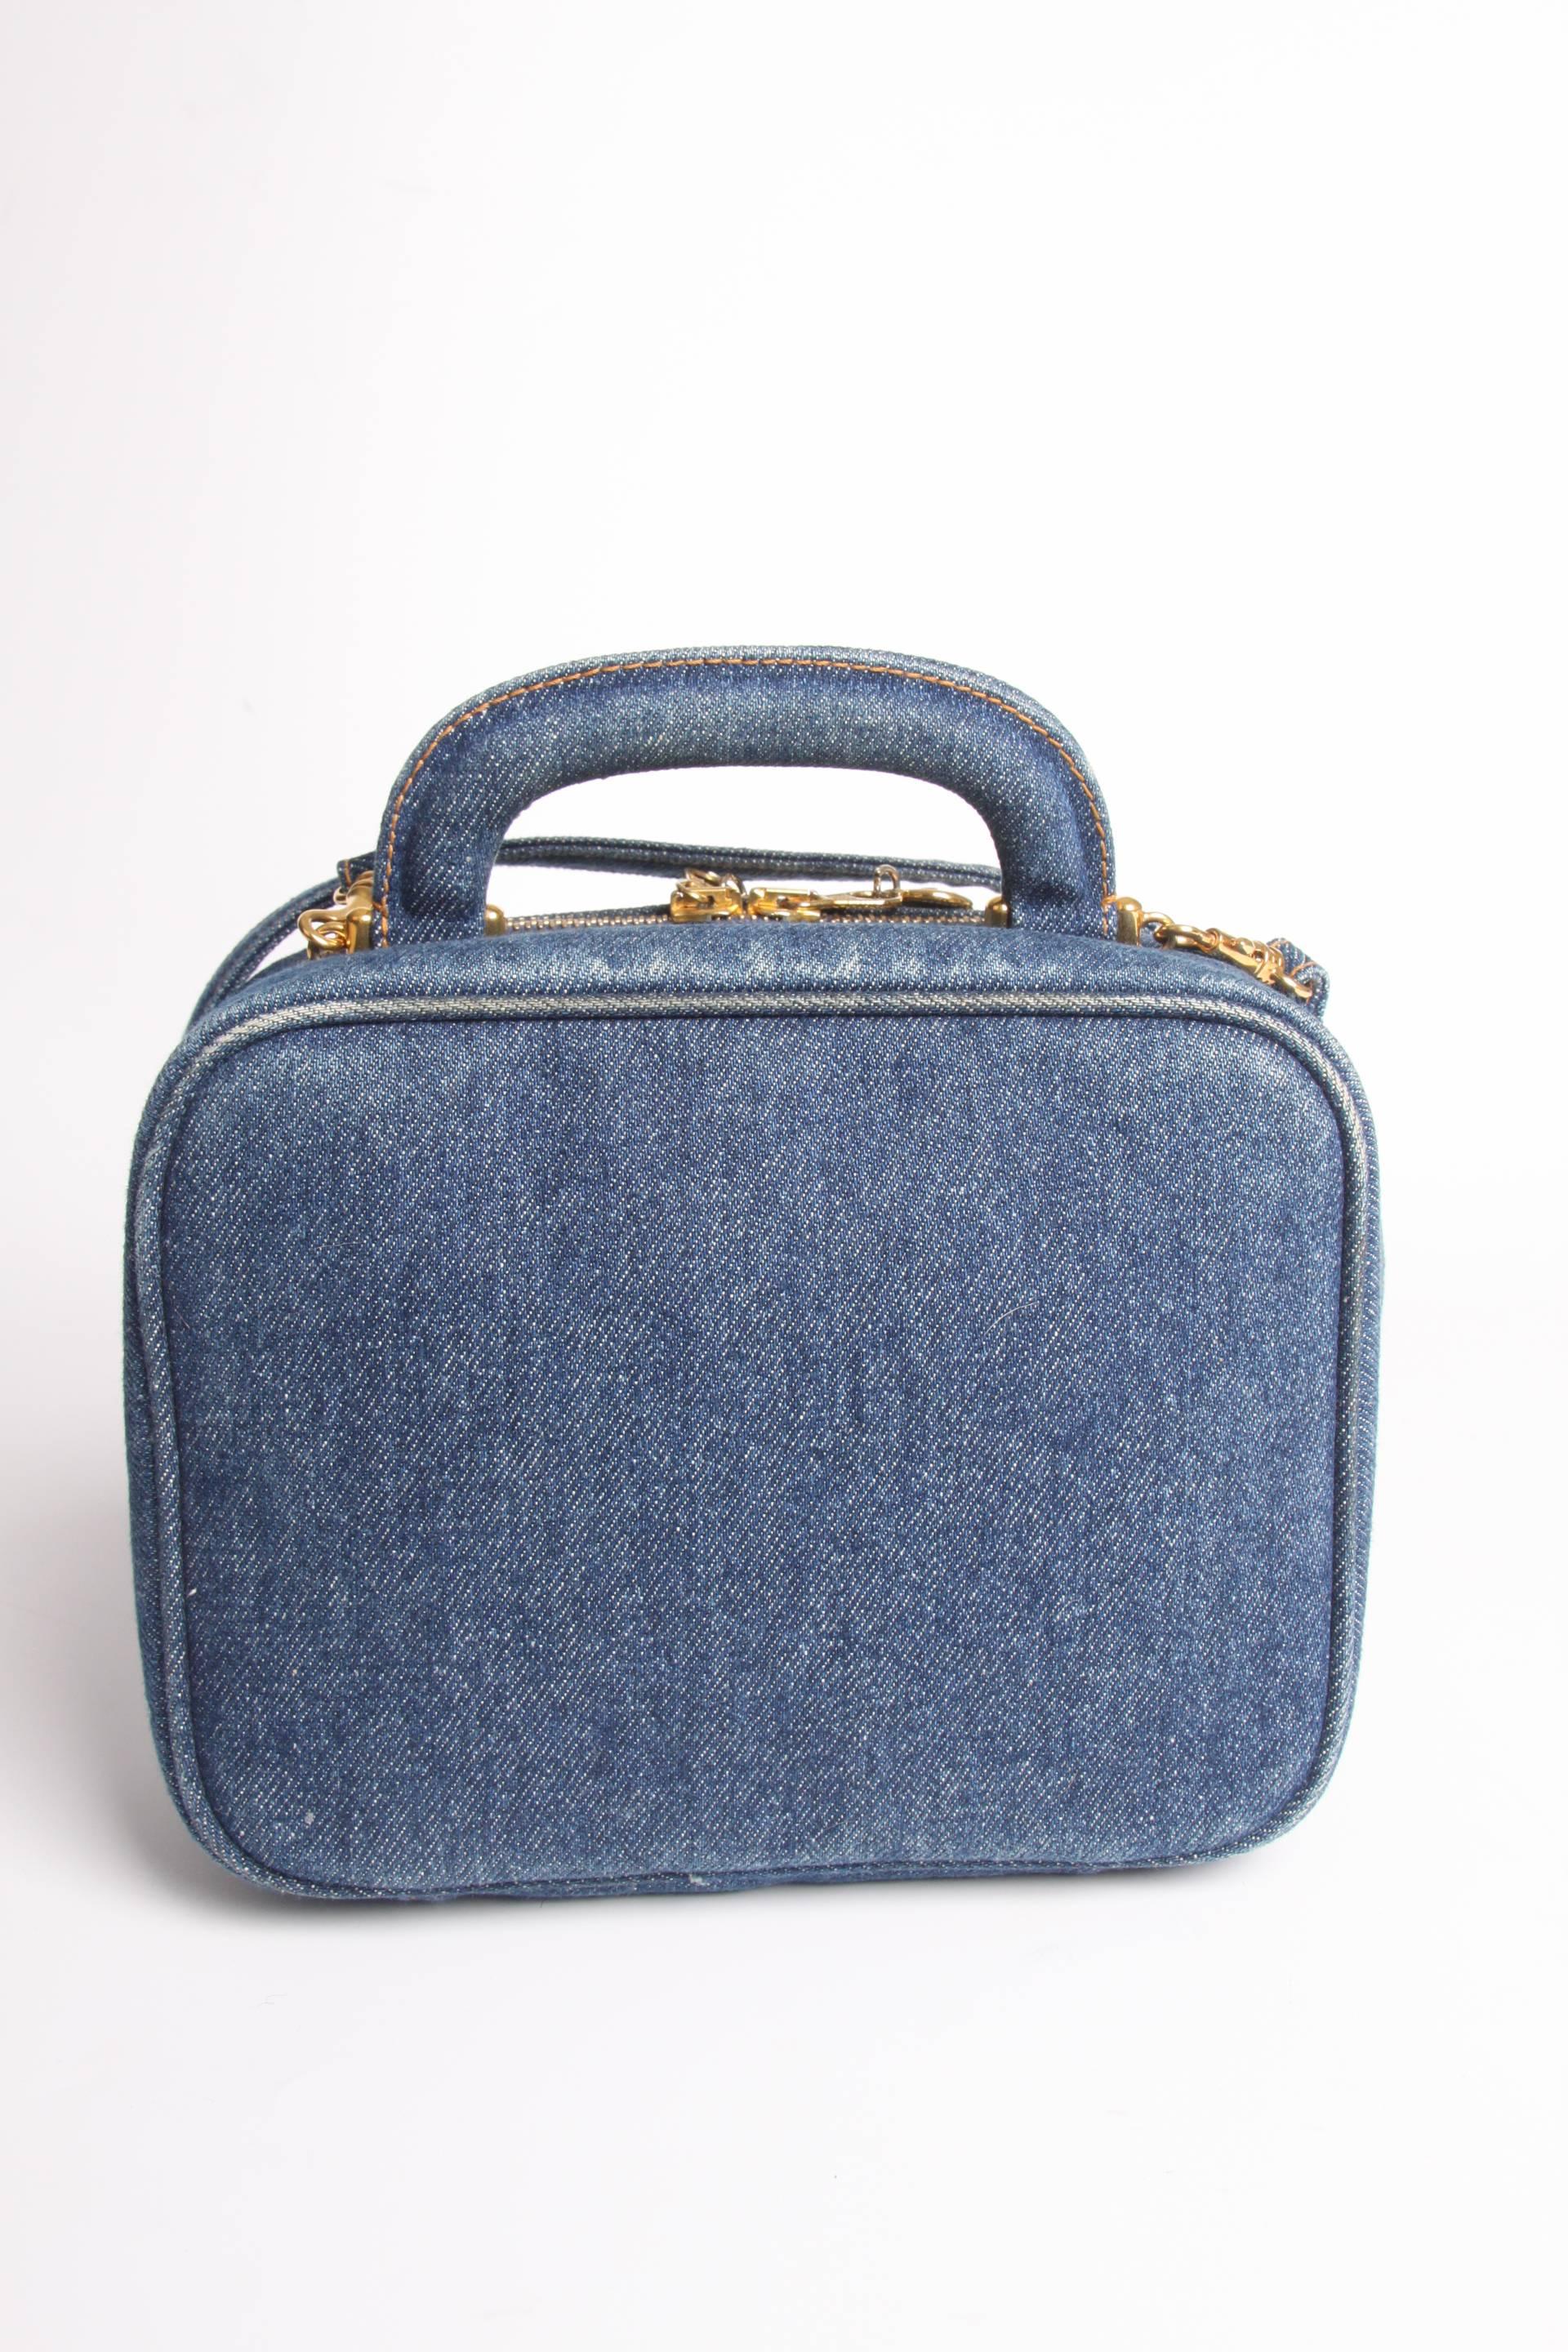       Chanel Vanity Bag Denim Vintage - blue 1996 3